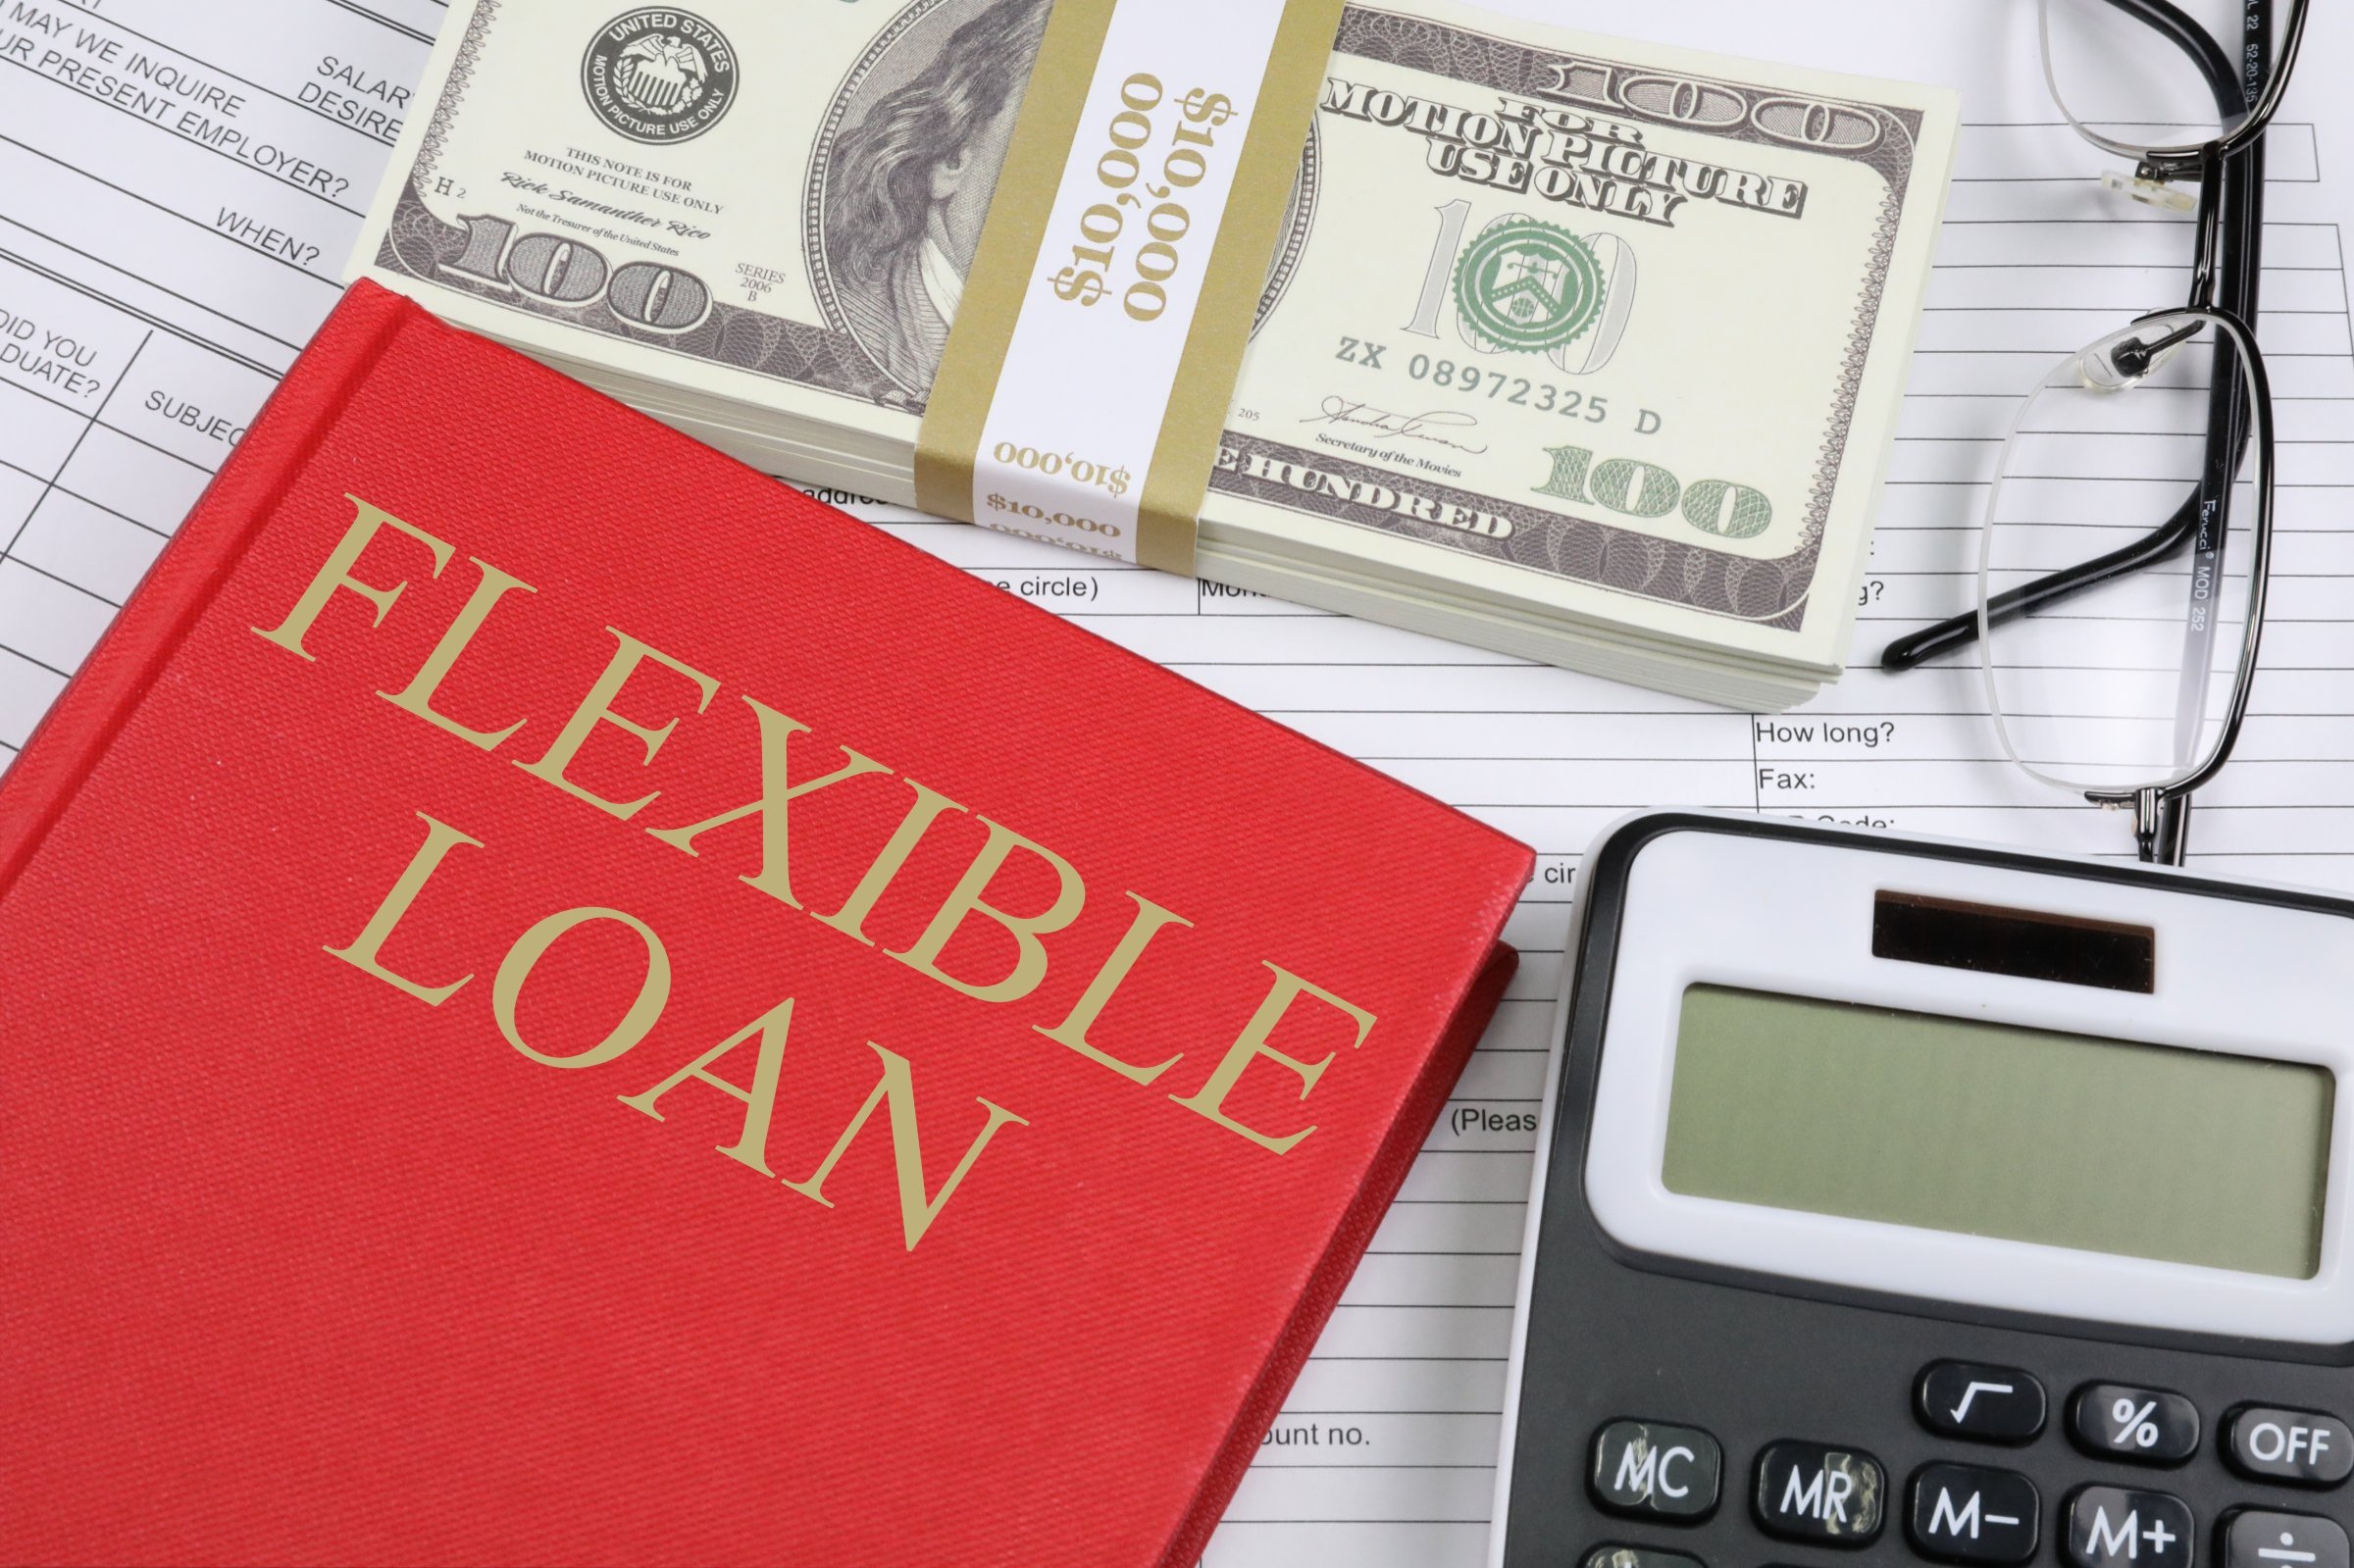 flexible loan